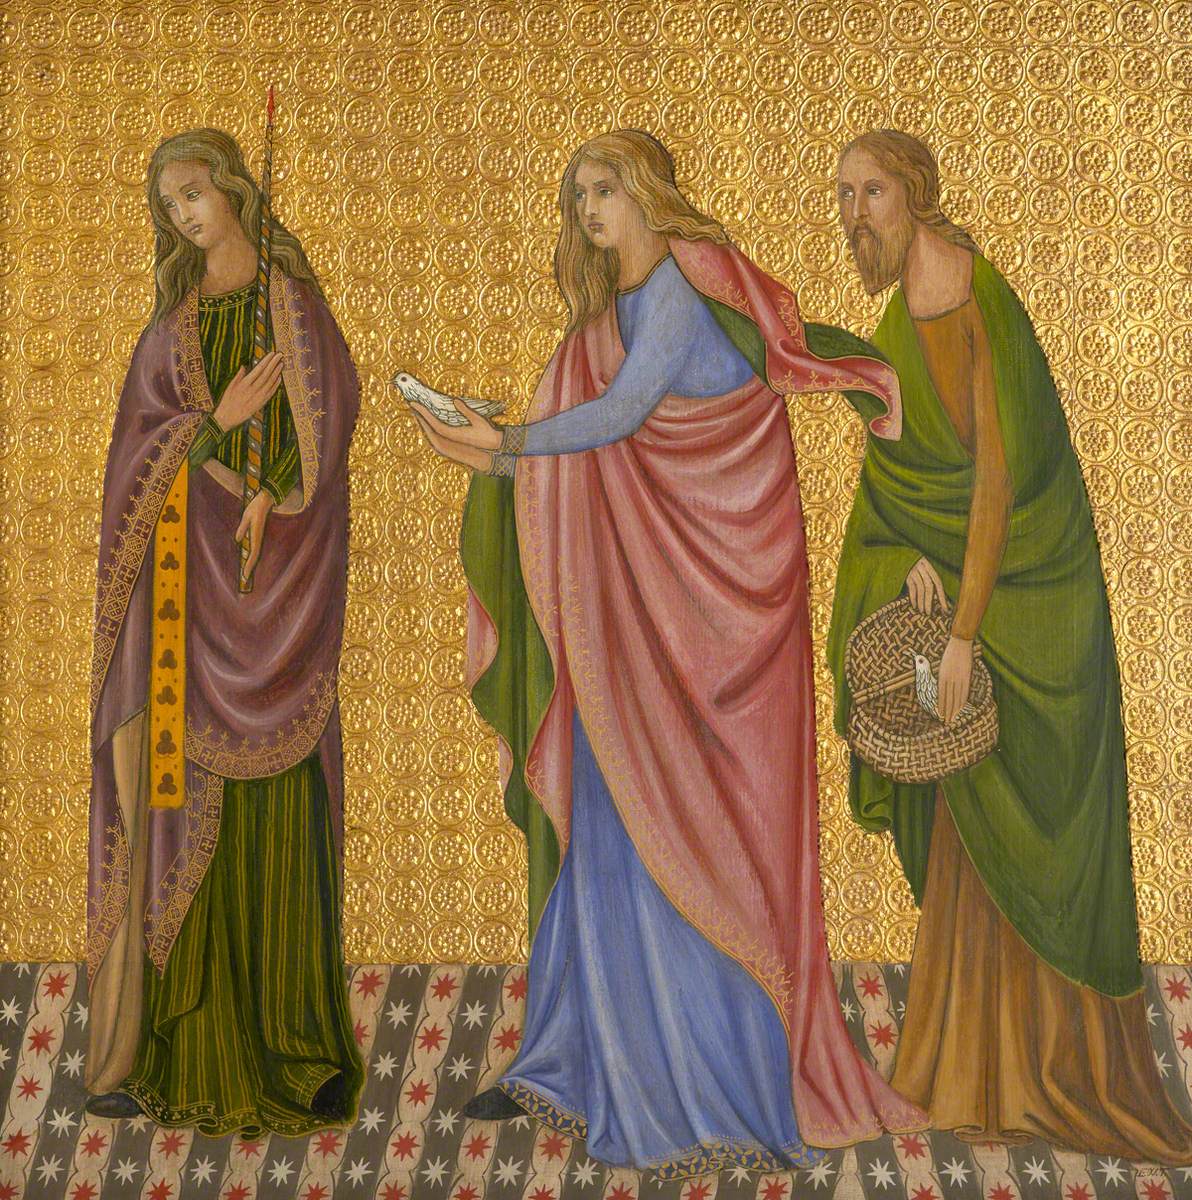 medieval paintings of women